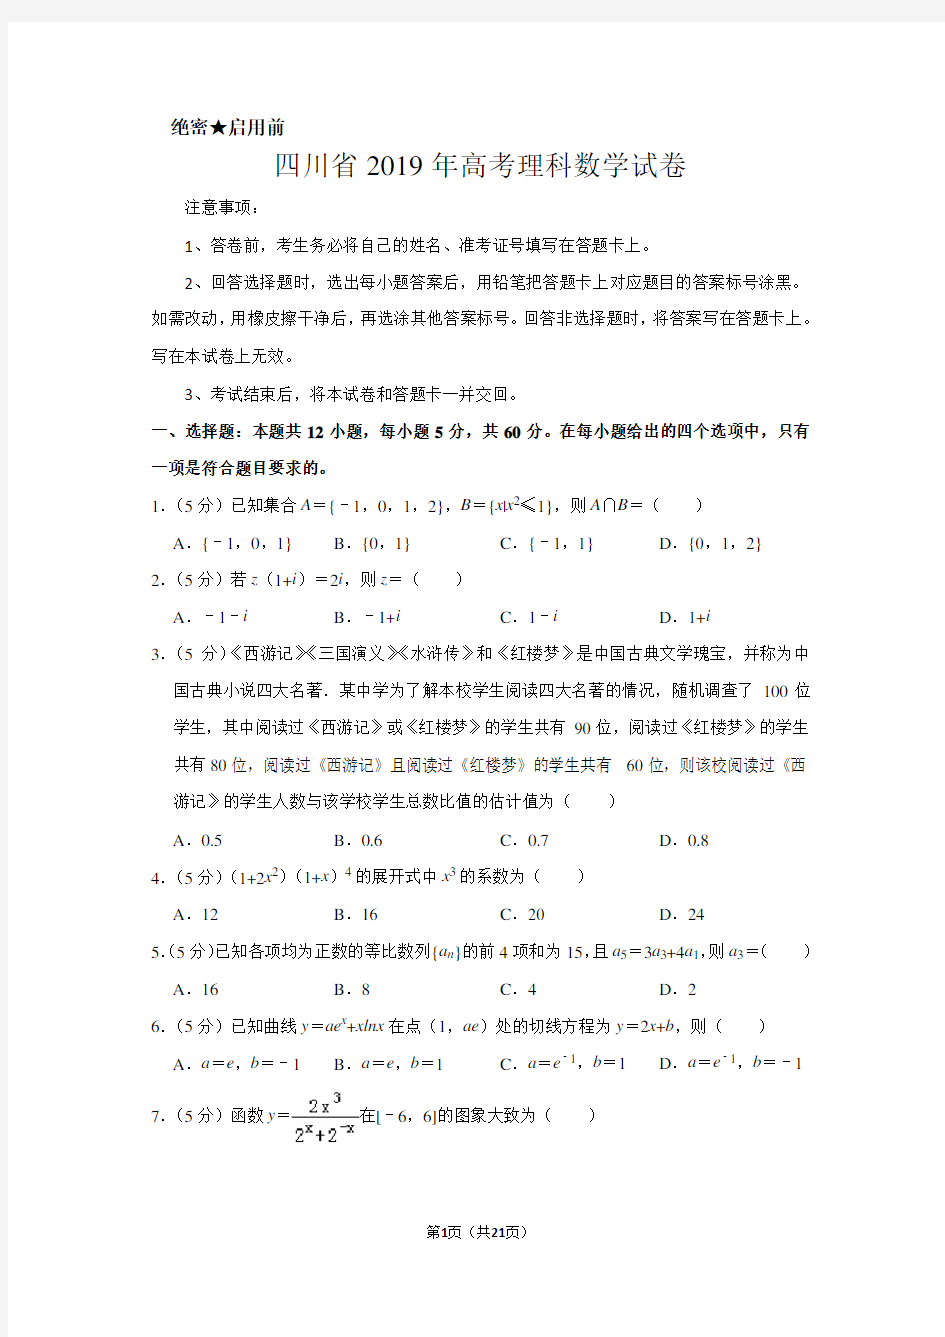 四川省2019年高考数学试卷(理科)以及答案解析